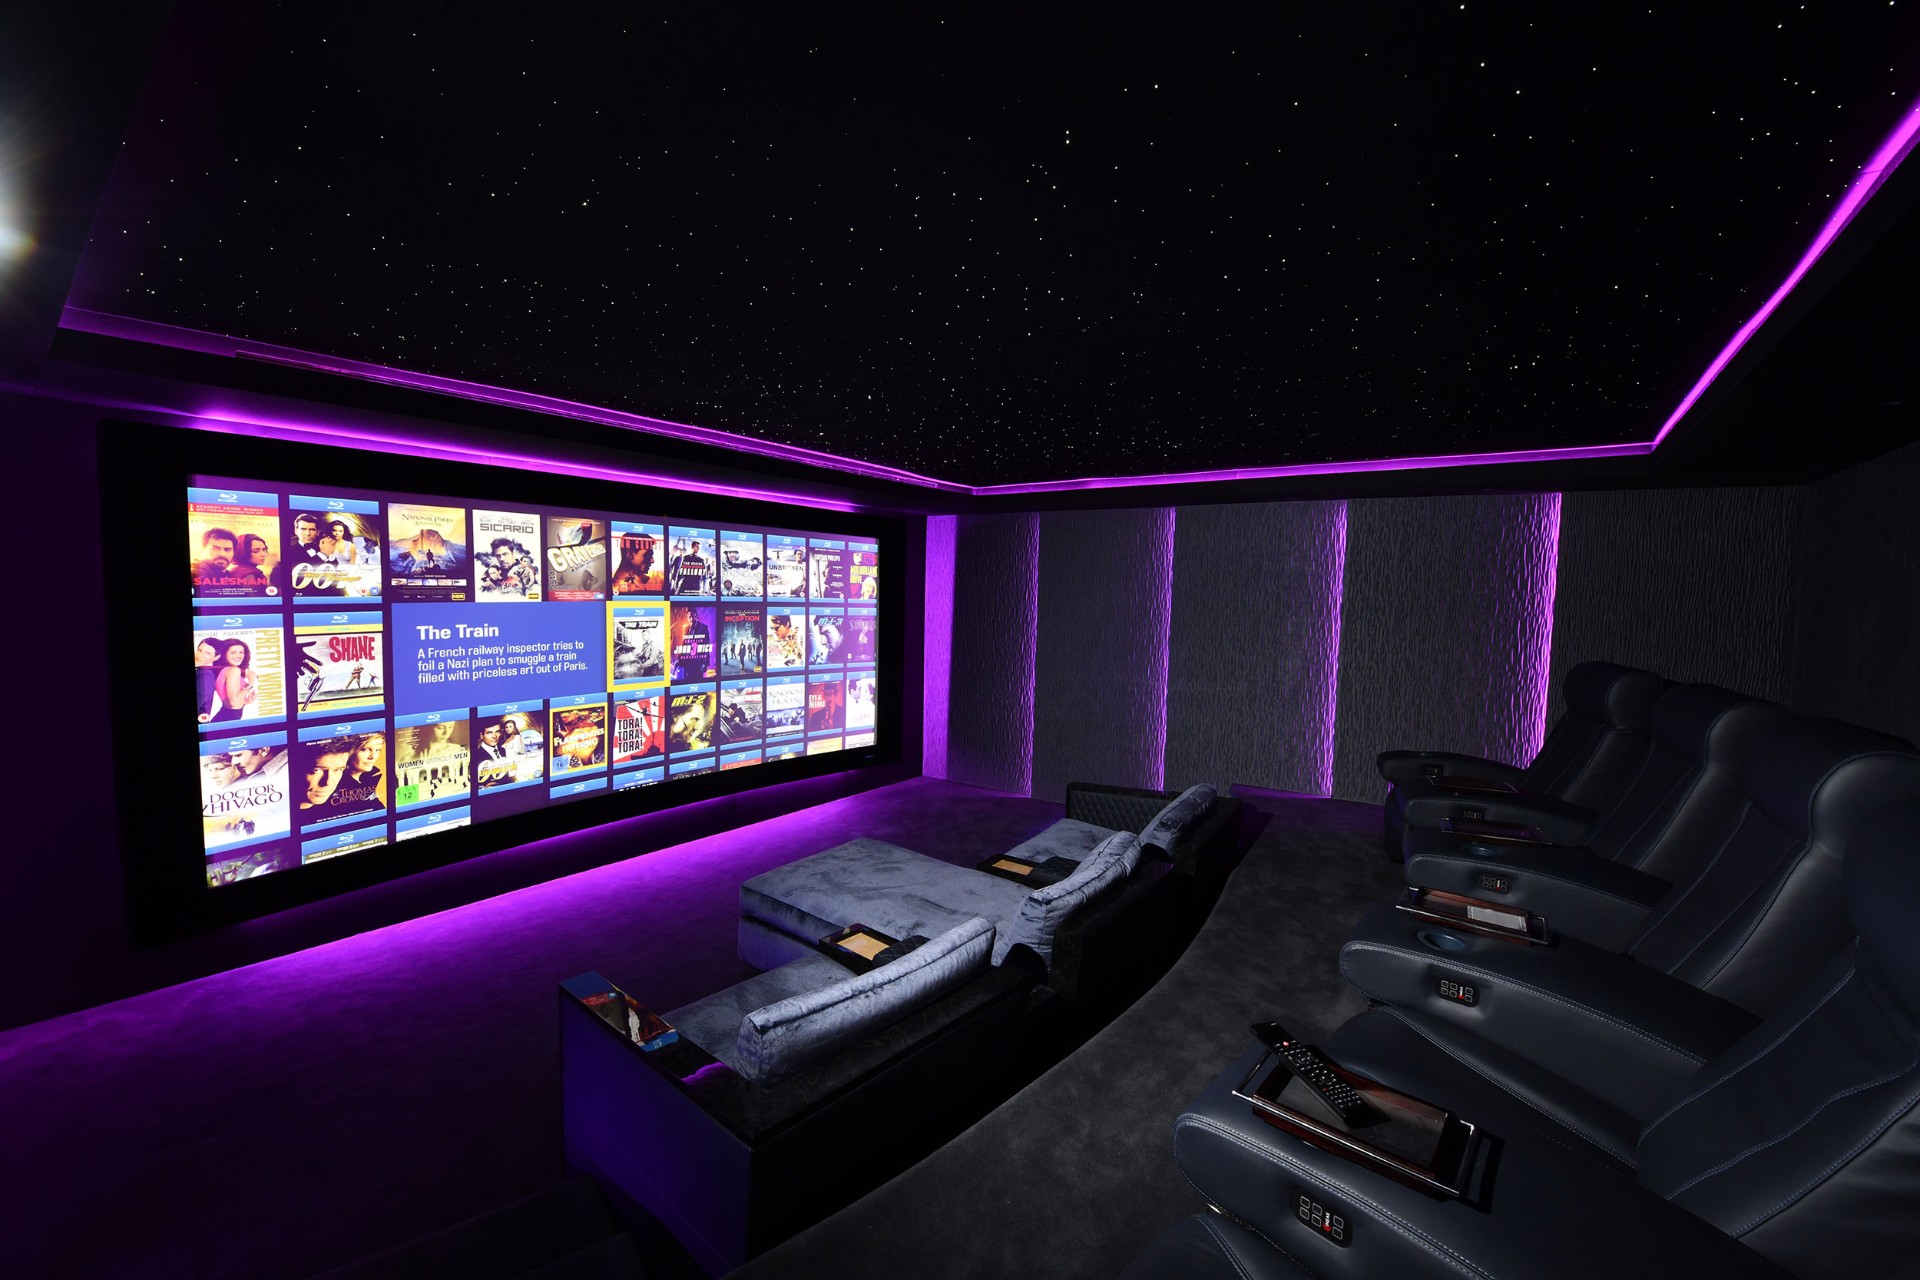 Home Cinema System or Media Room? Image